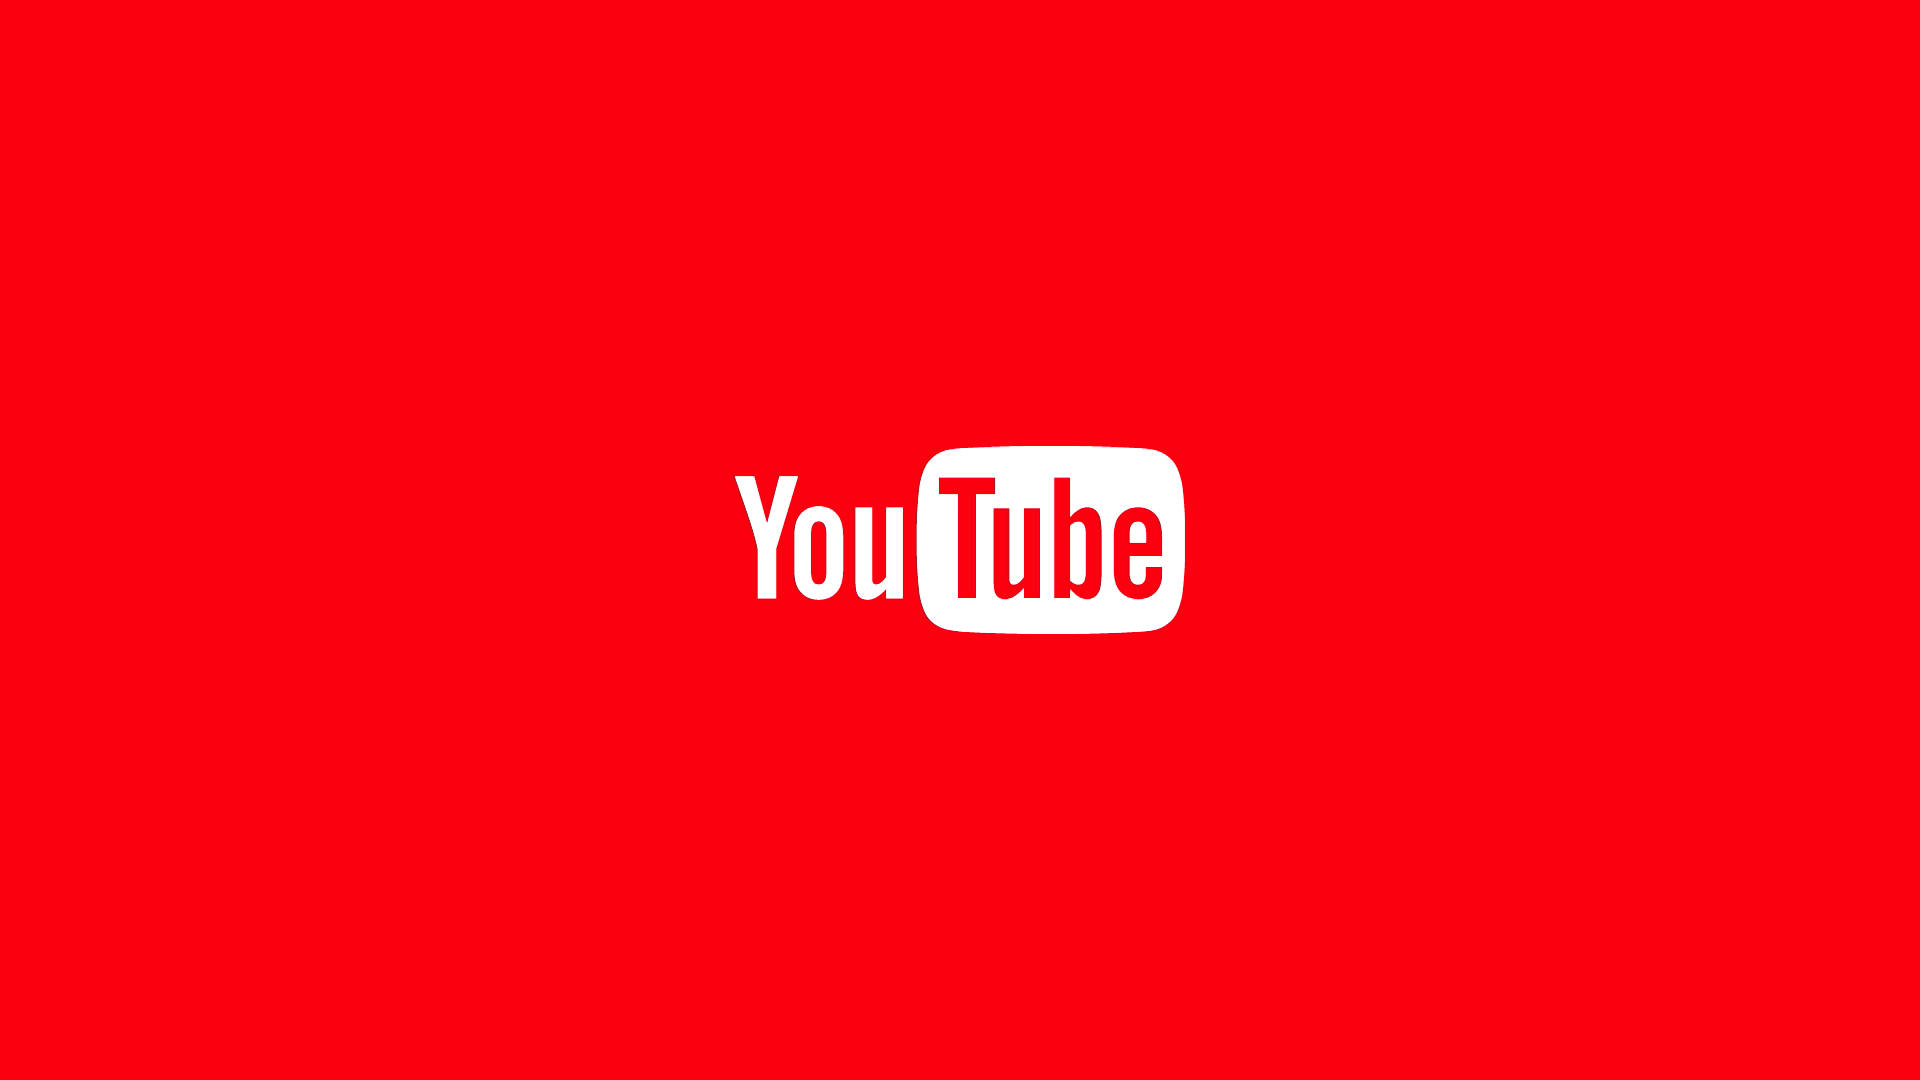 Aesthetic Youtube Wordmark Logo Background